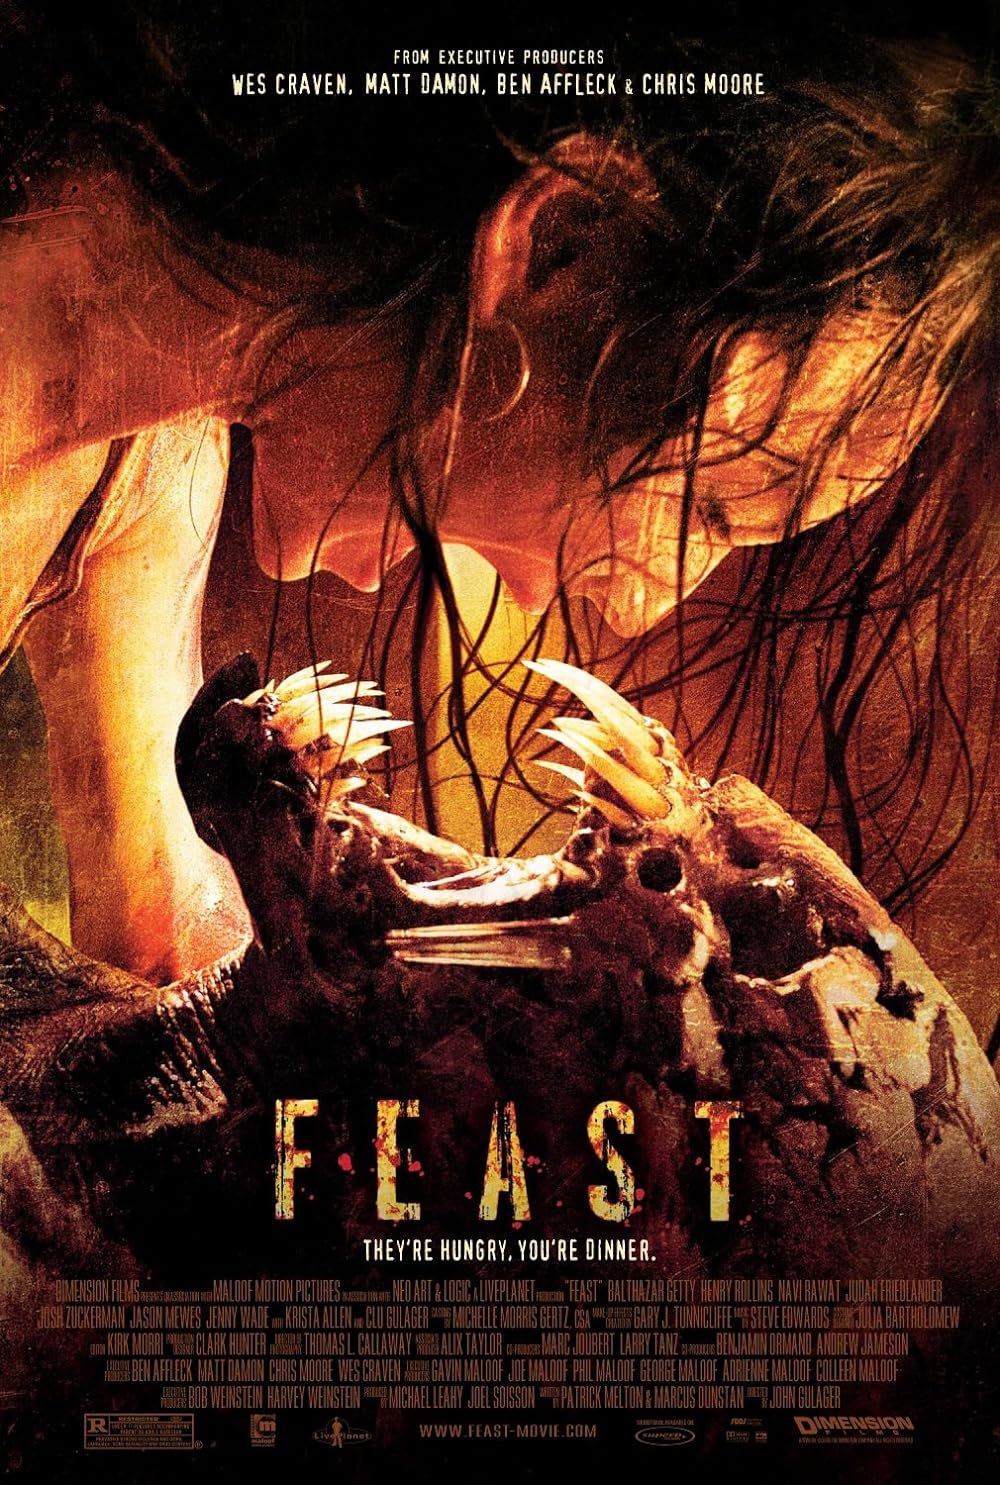 FULL MOVIE: Feast (2005)